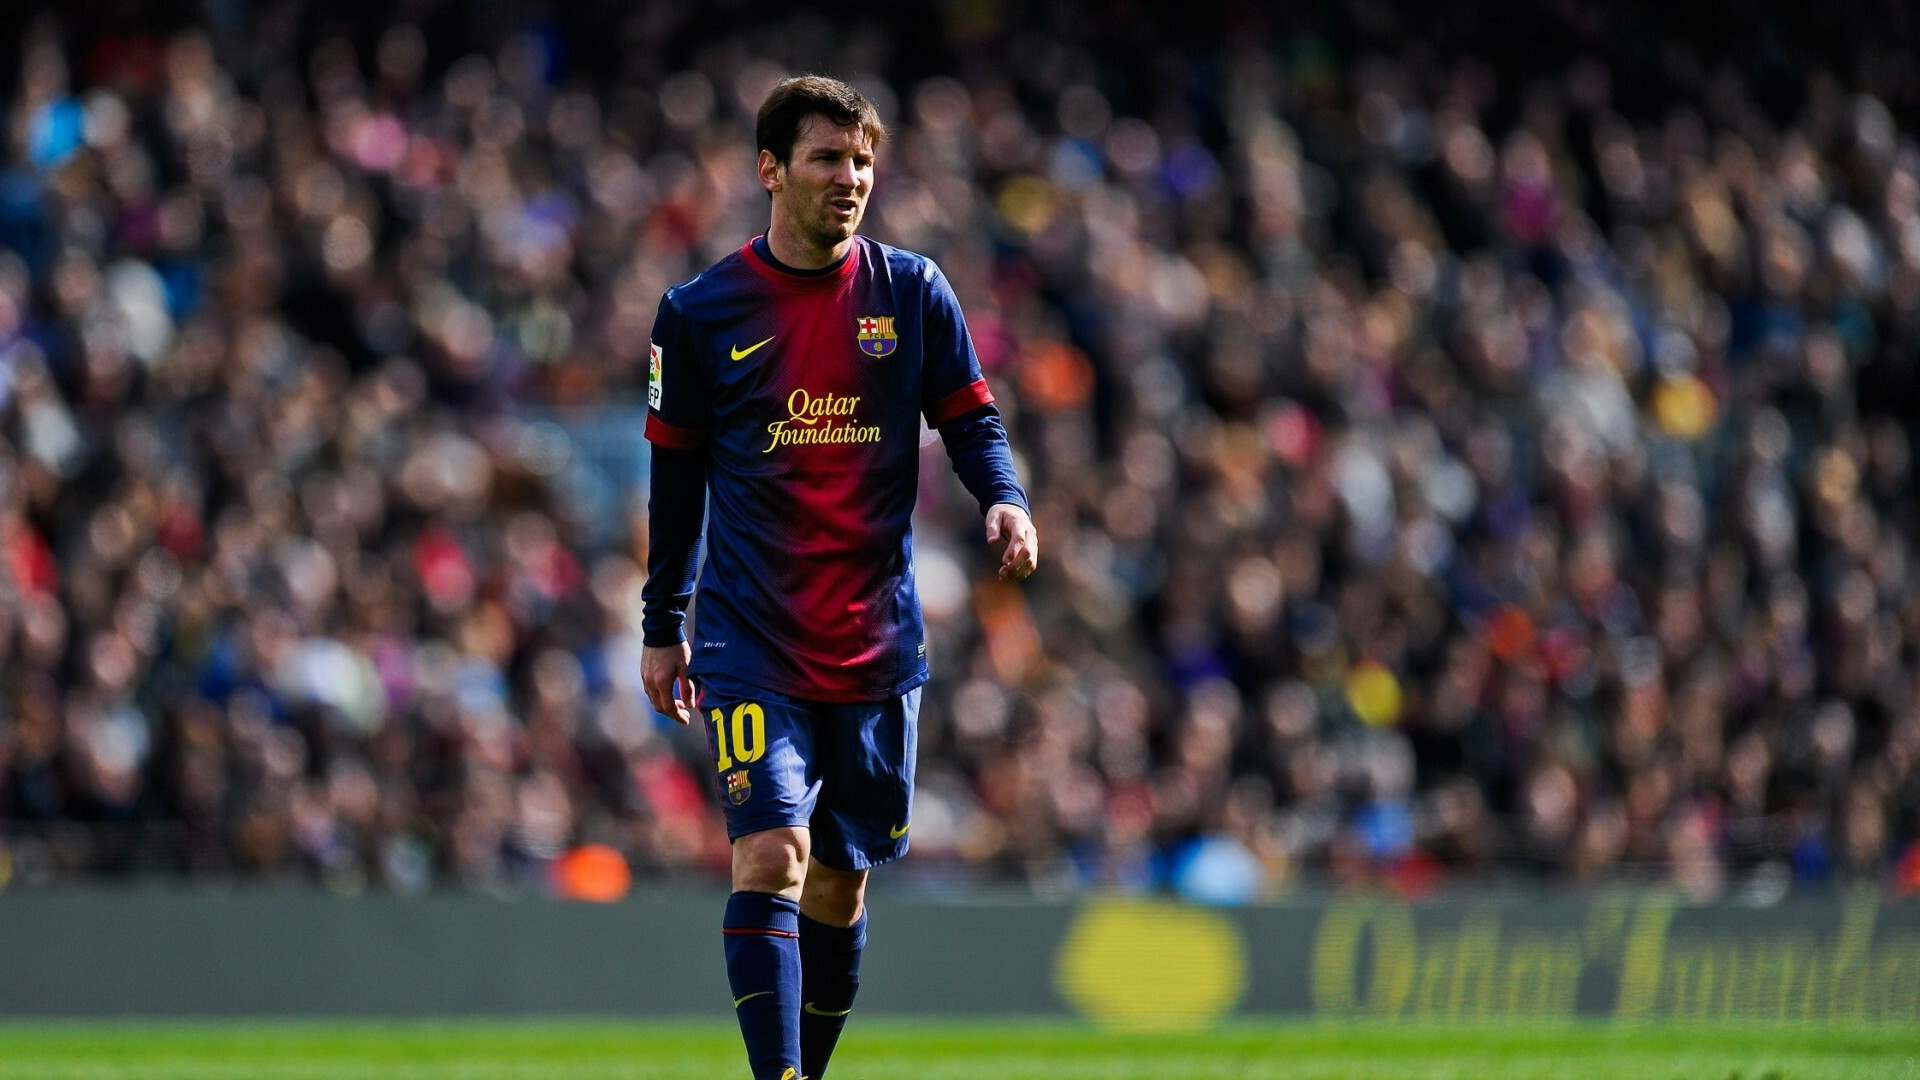 Lionel Messi: Barcelona, Football, Diego Maradona described him as his successor. 1920x1080 Full HD Wallpaper.